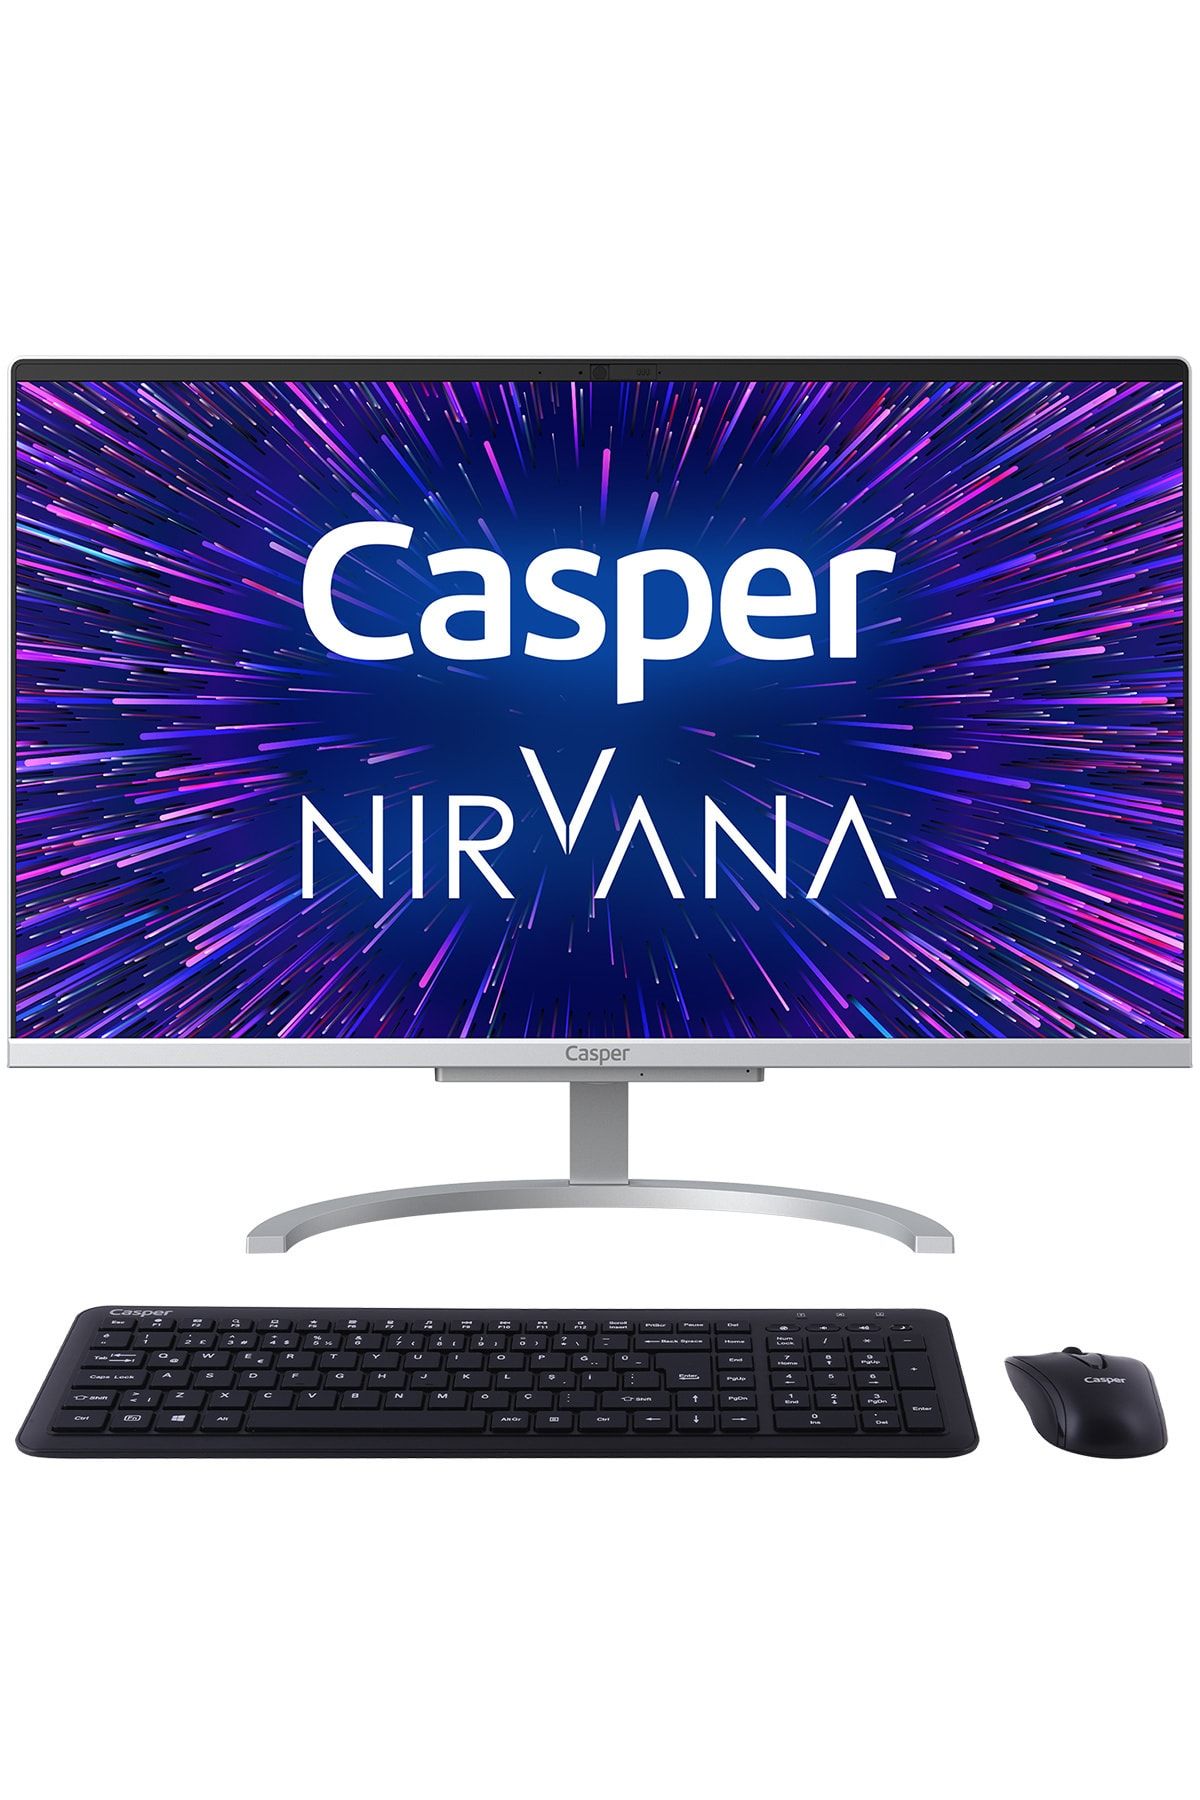 Casper Nirvana A46.1035-4l00r-v Intel Core I5-1035g1 4gb 500gb Hdd Windows 10 Pro 21.5" Fhd